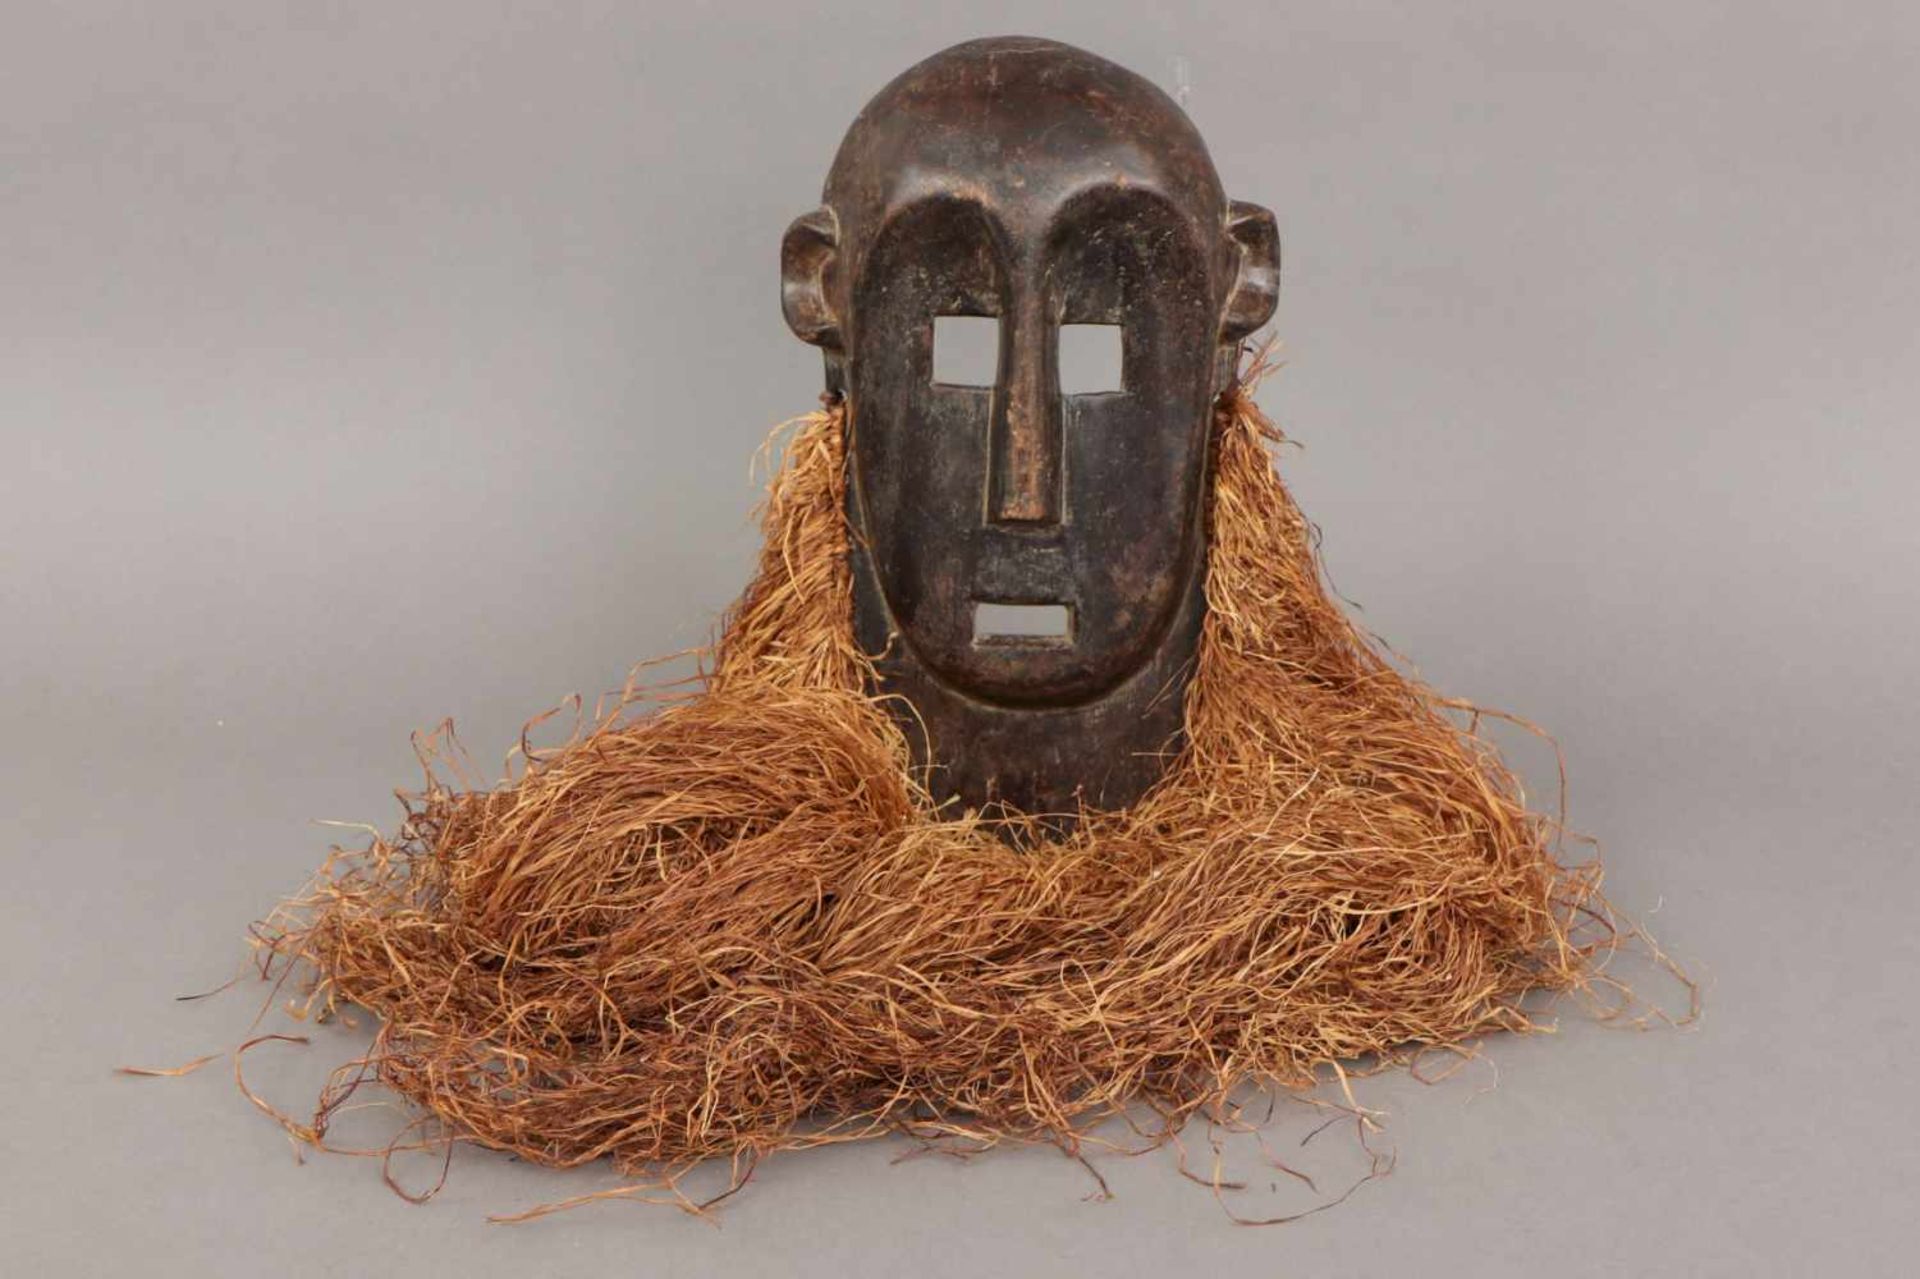 Afrikanische Tanzmaske der Lega, Kongo dunkel patiniertes Holz und Rafia (Bart), ovales Gesicht mit